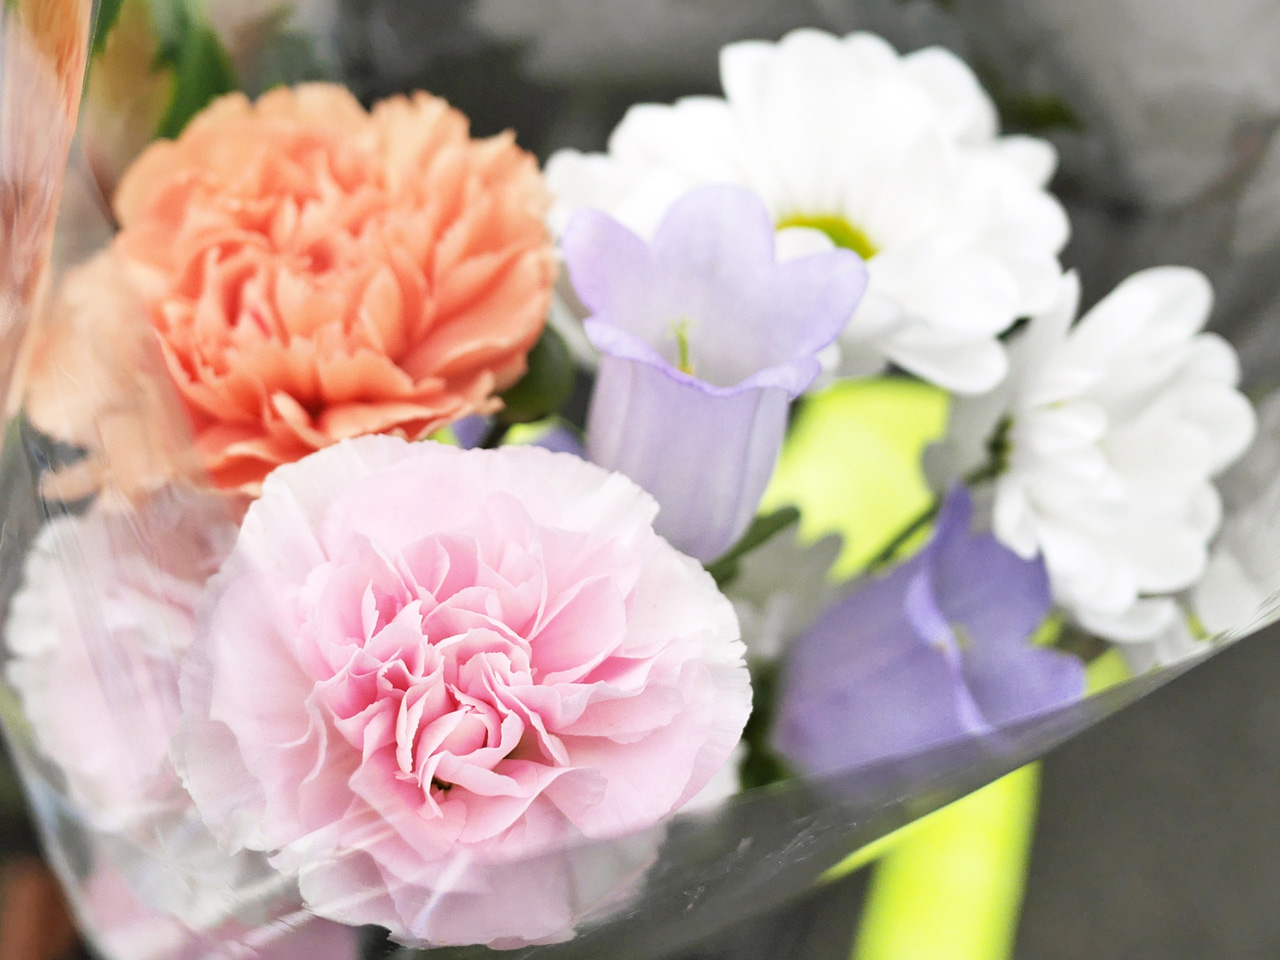 高尾駅前の花屋で墓前に供養する花を購入